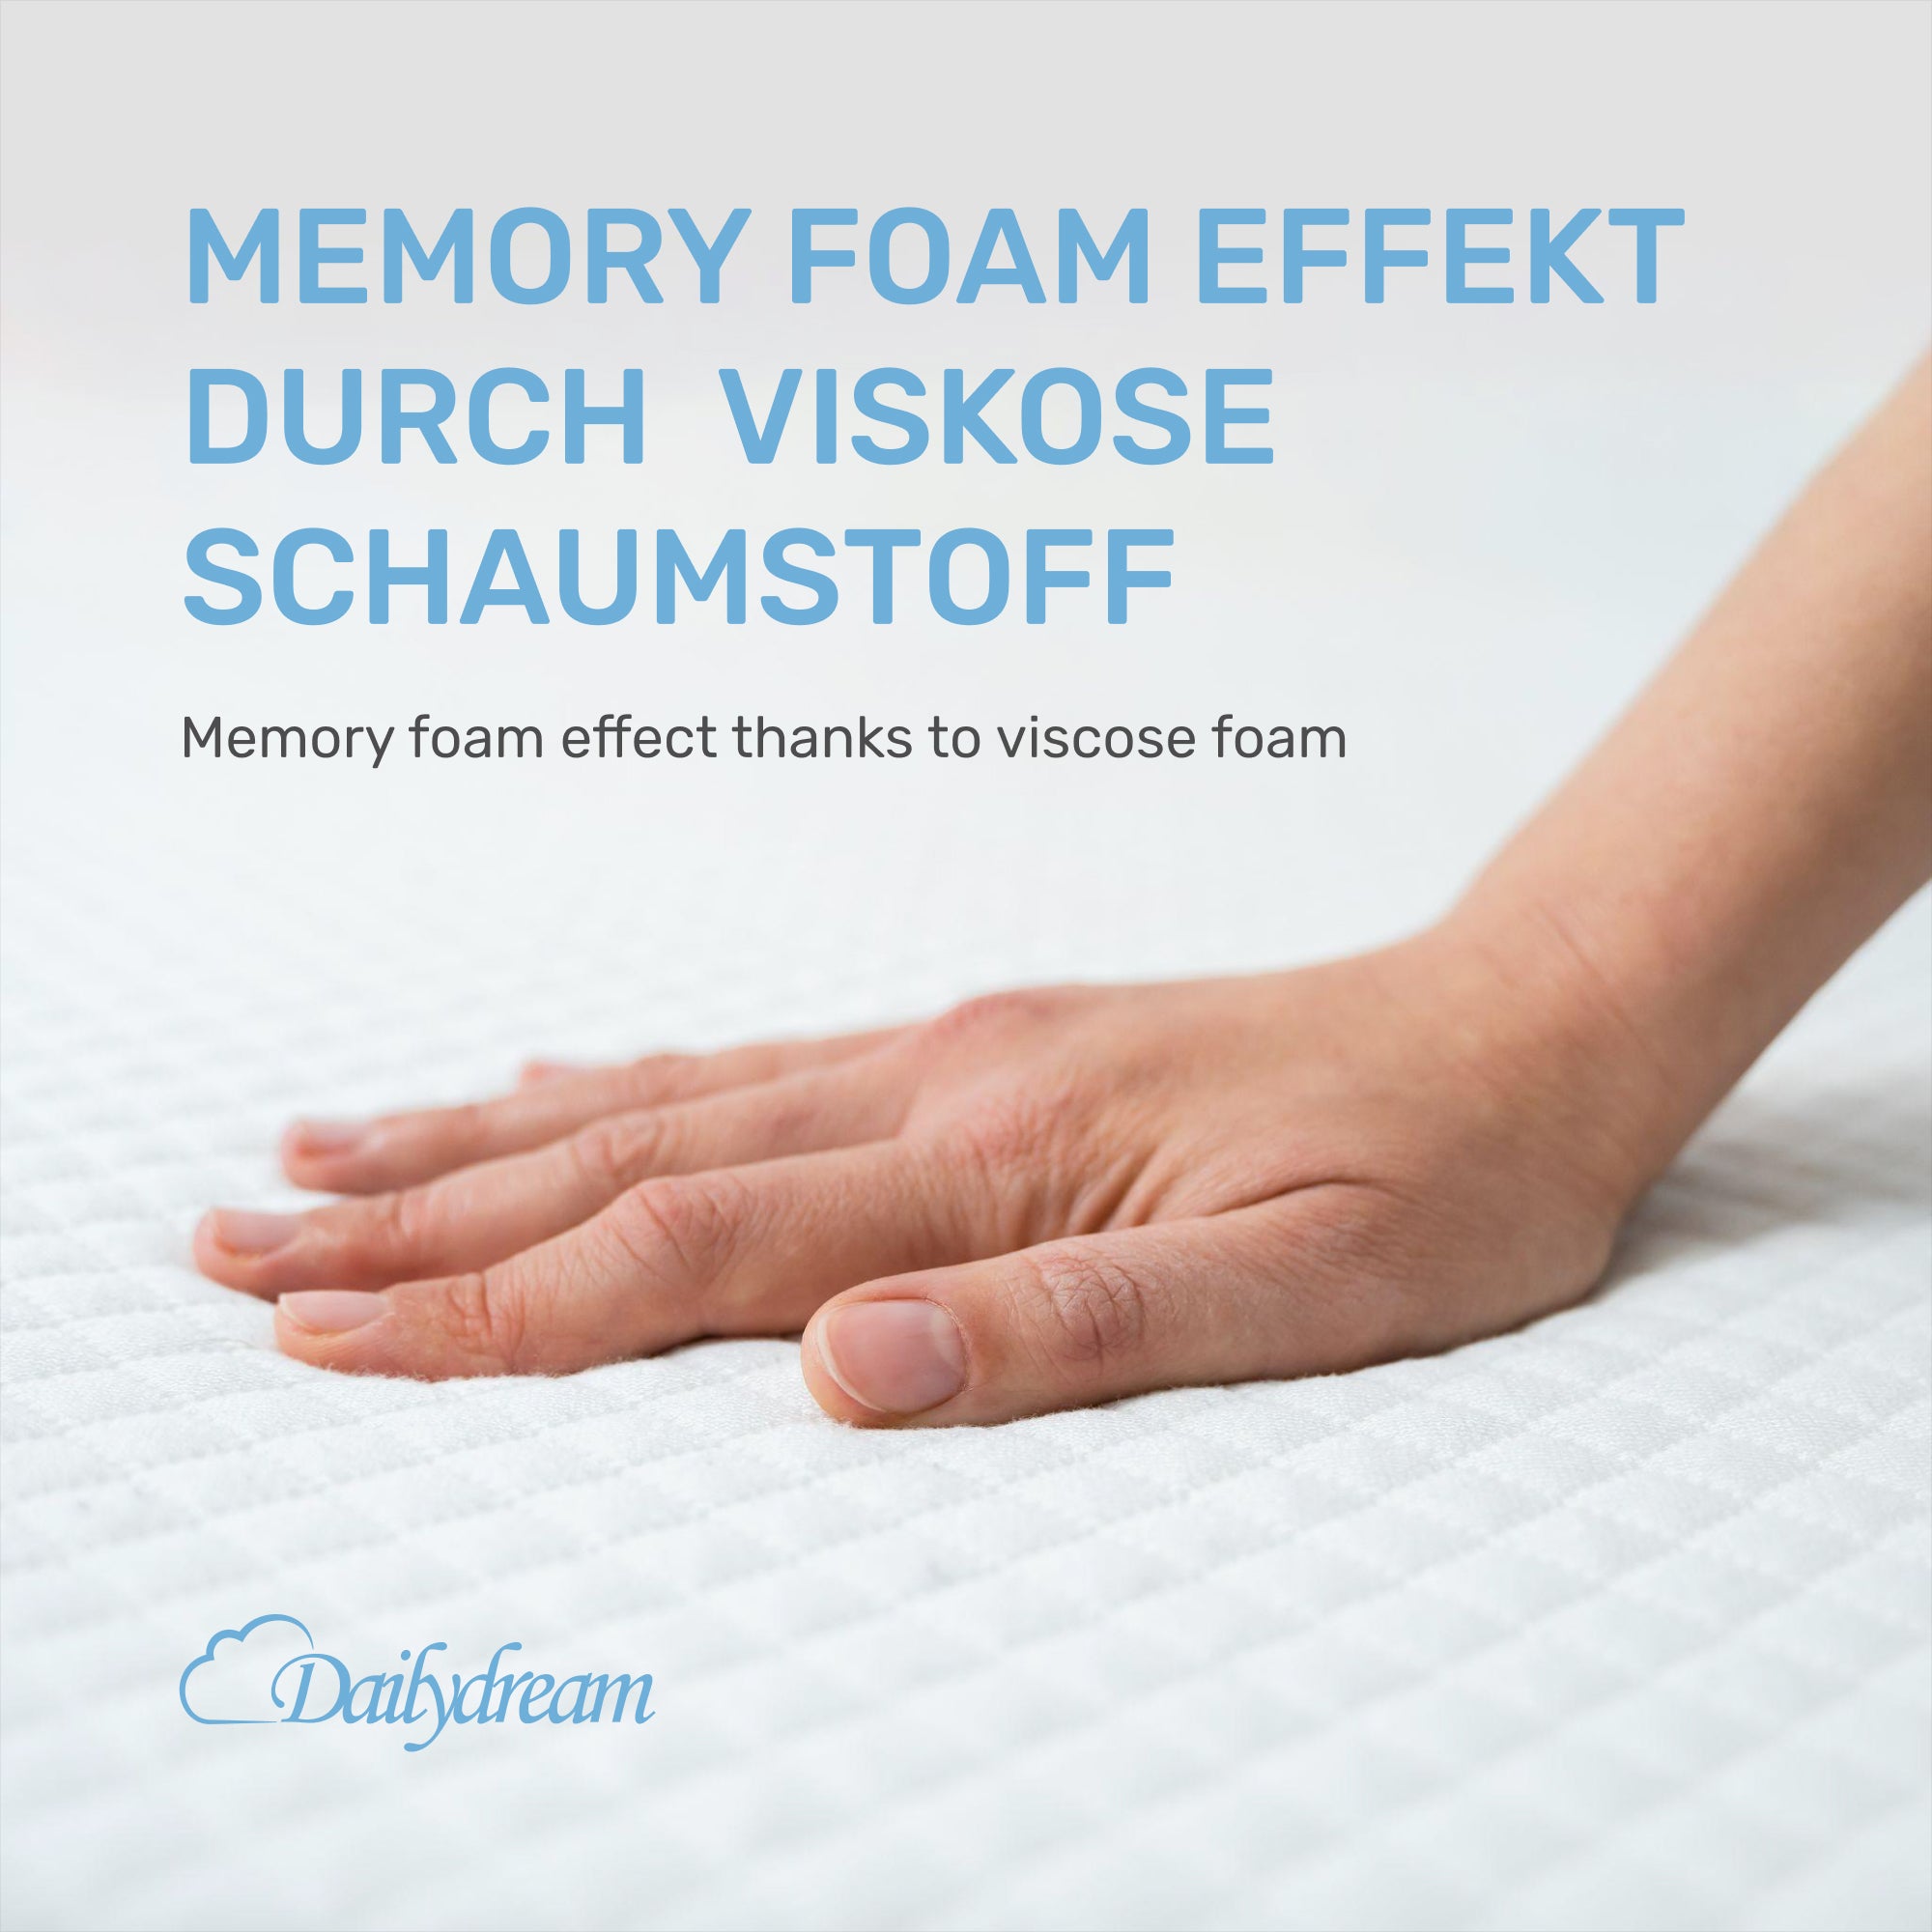 Dailydream viscoelastischer Matratzentopper mit Memory Foam Effekt, Edition "Lavendel"